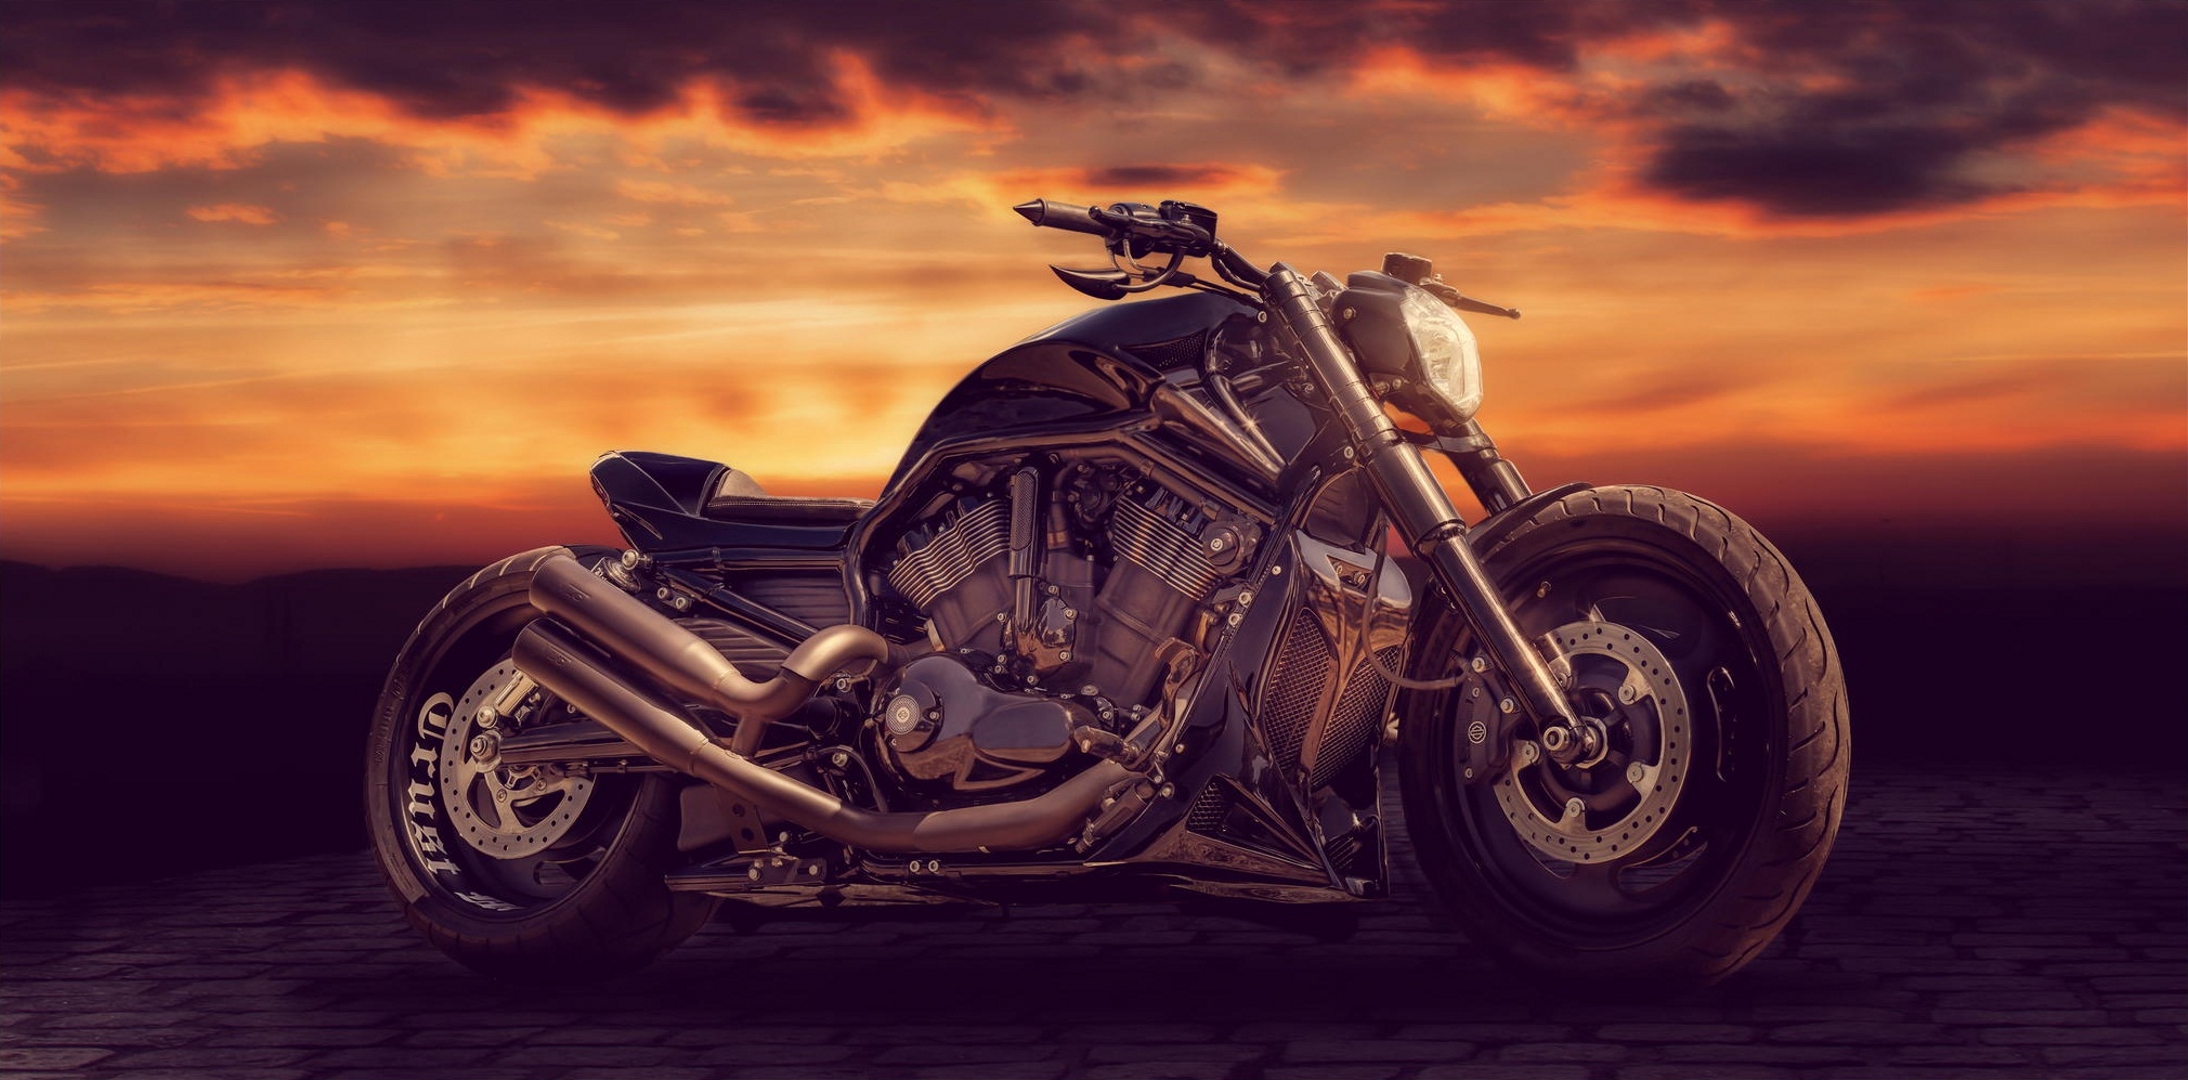 Desktop Backgrounds Style motorcycles, sandra dombrovsky, bike, motorcycle